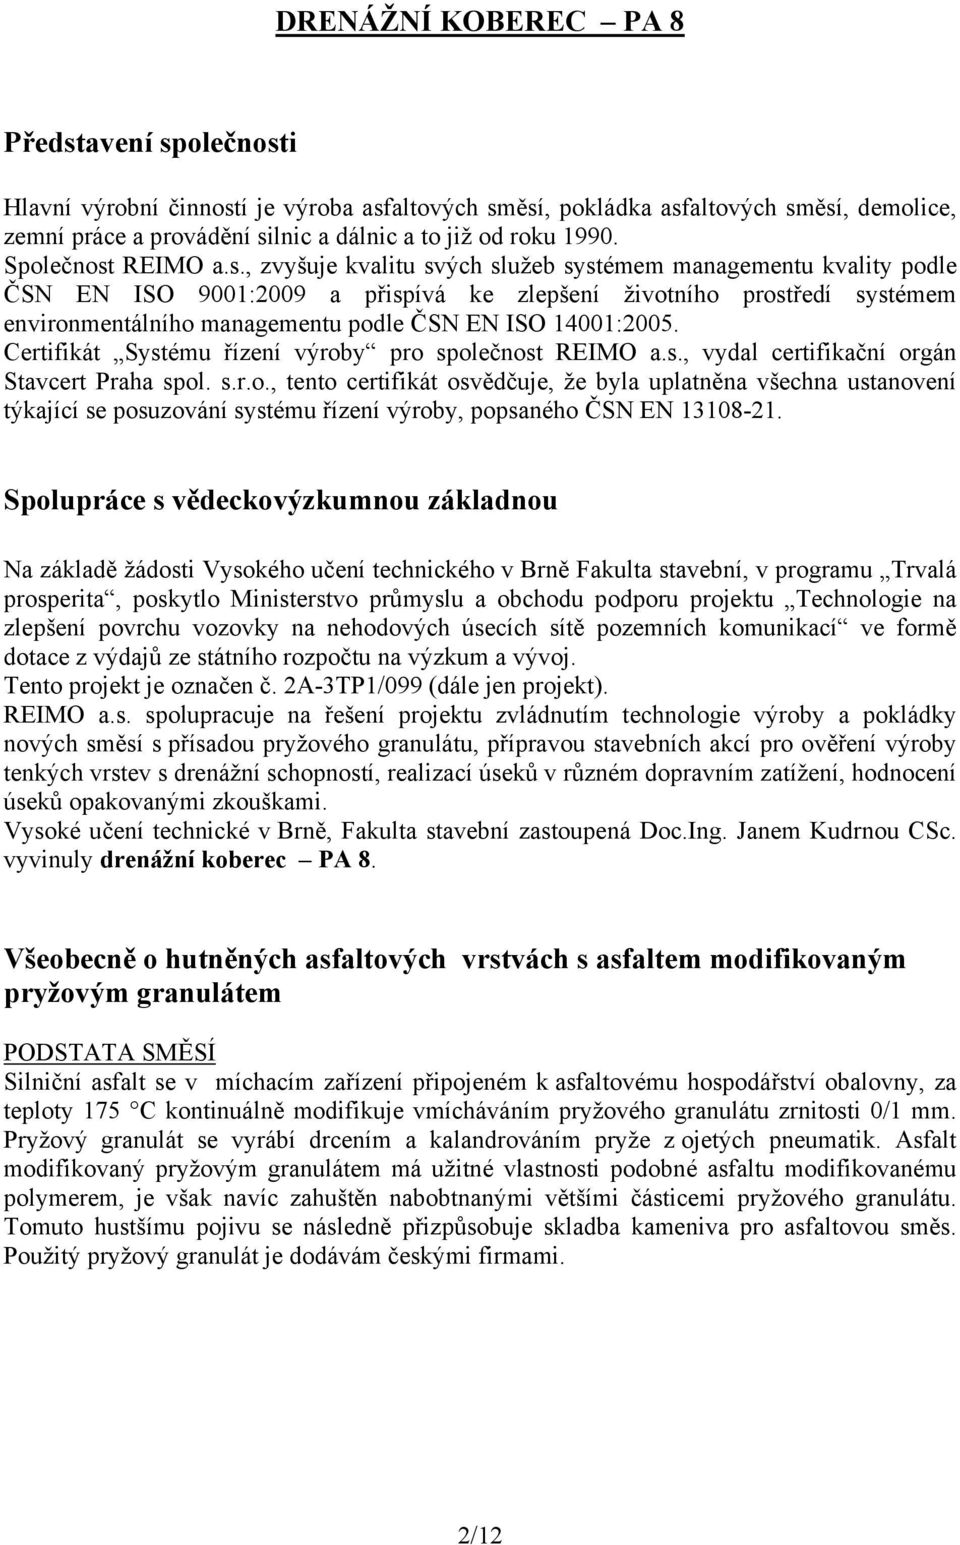 DRENÁŽNÍ KOBEREC PA 8 - PDF Free Download